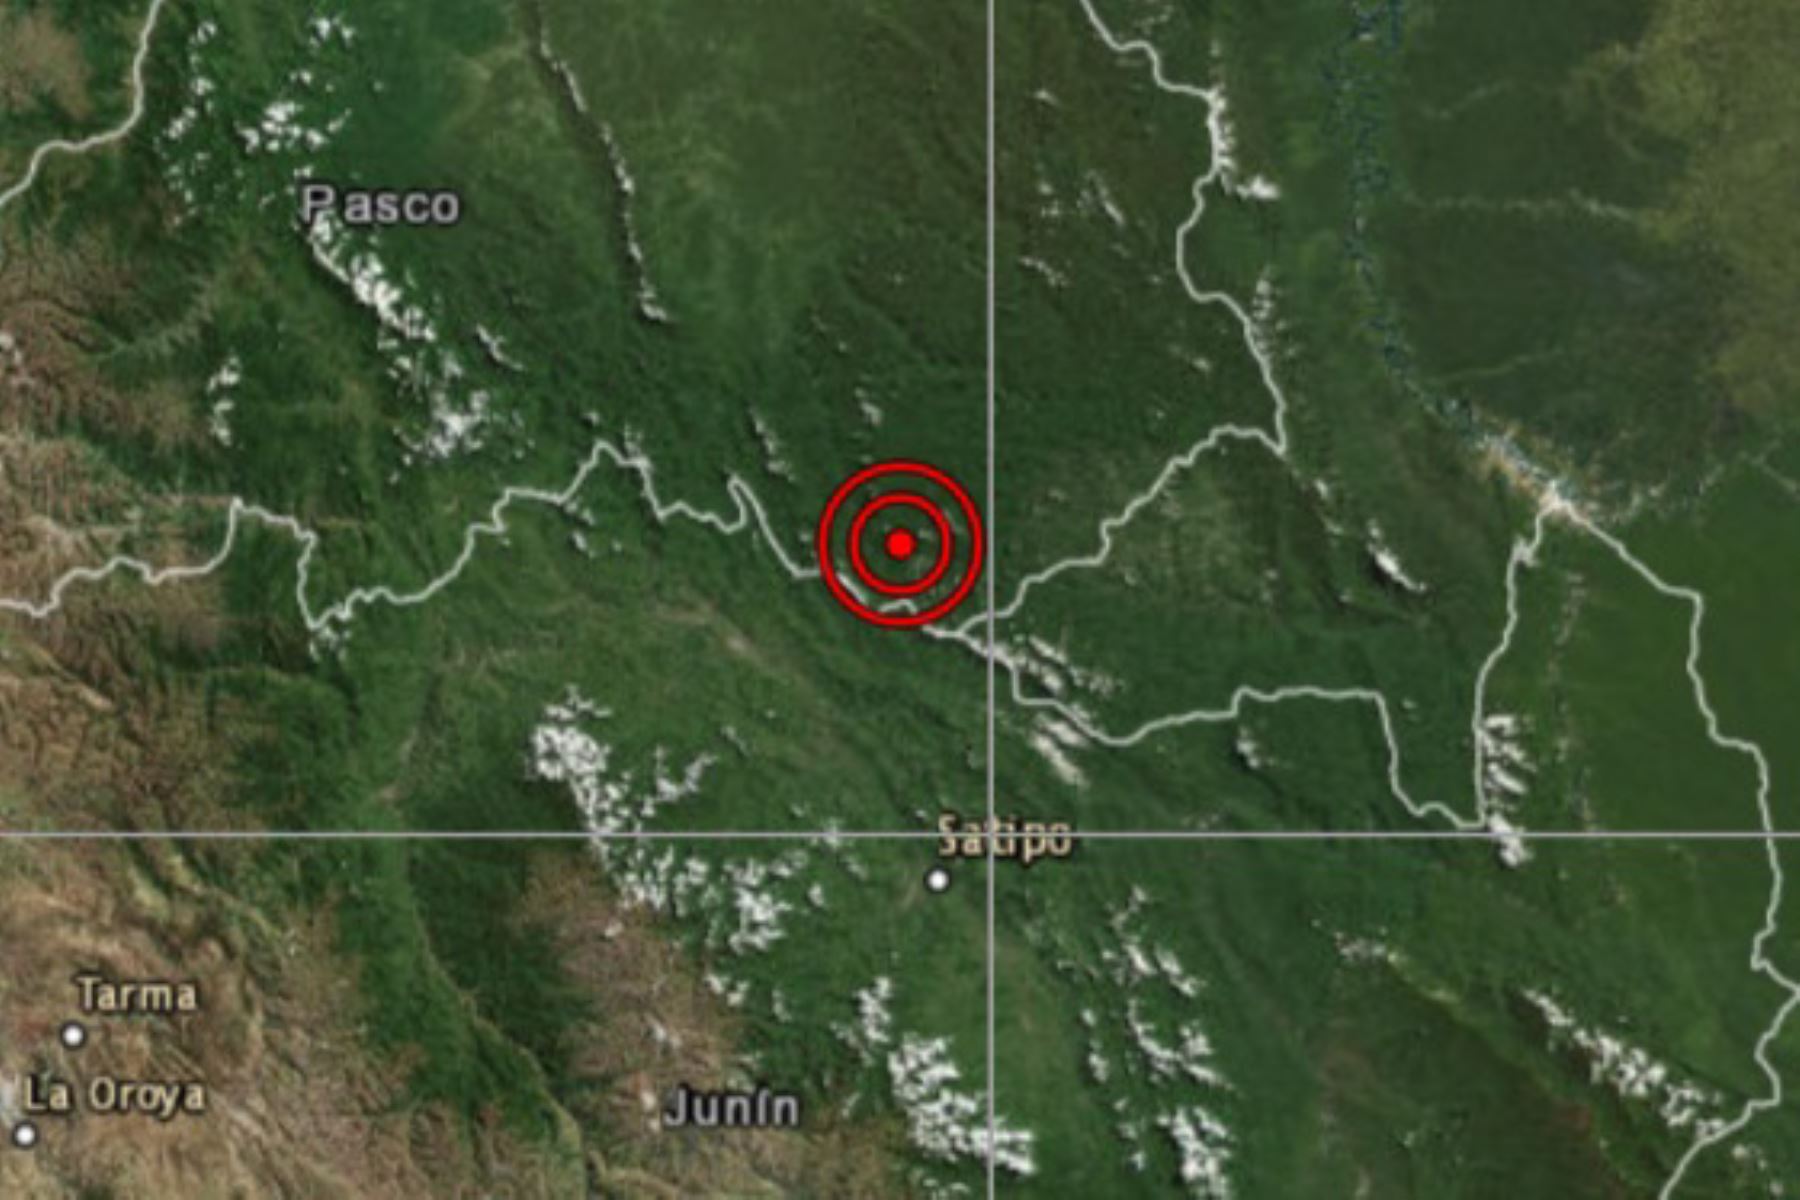 Un sismo de magnitud 3.6, con una profundidad de 13 kilómetros, se registró esta tarde en la región Junín. Según el Centro Sismológico Nacional del Instituto Geofísico del Perú, el temblor se produjo a las 12:49 horas. Foto: ANDINA/difusión.